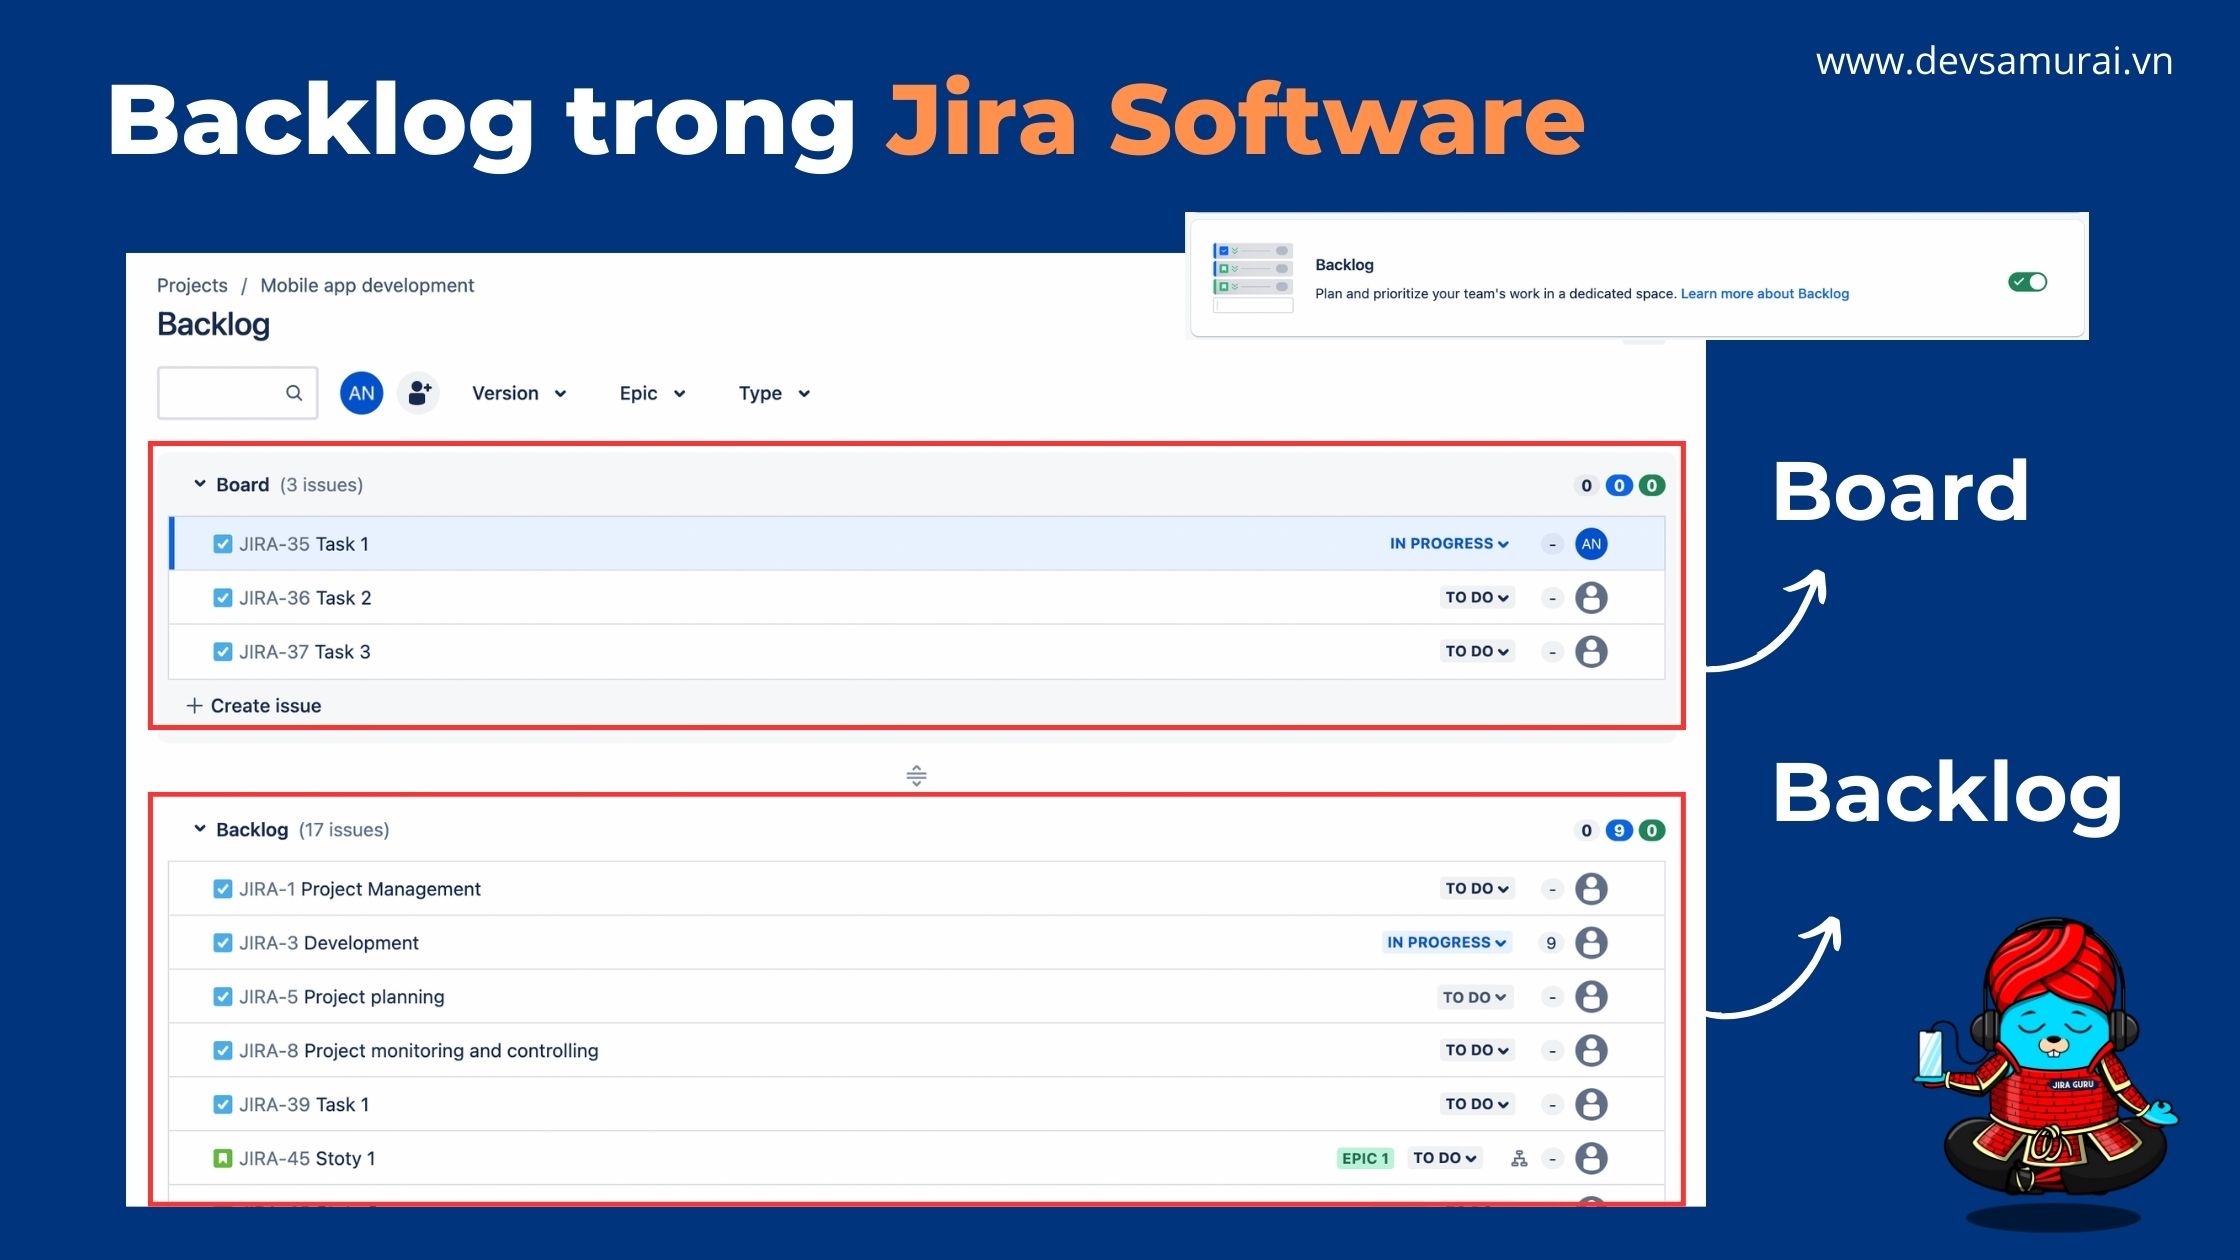 Backlog in Jira Software